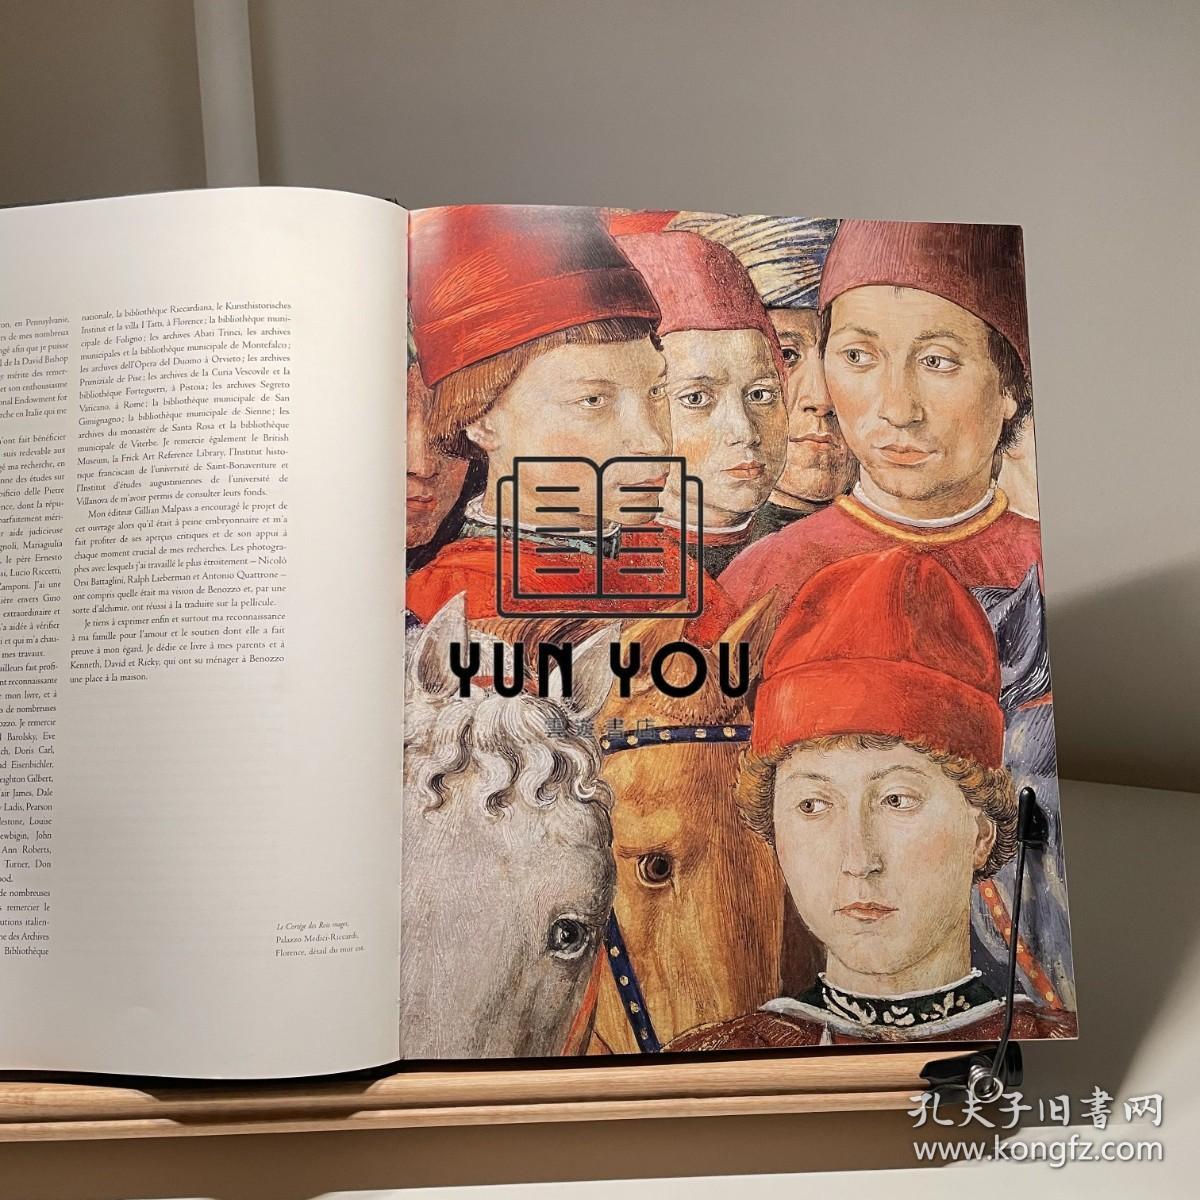 海外仓发货 少见 精装 重4斤  最好的贝诺佐·戈佐利全集 BENOZZO GOZZOLI（约 1420-1497 年）是文艺复兴时期最受尊敬和最多产的艺术家之一，今天被认为是 Quattrocento 佛罗伦萨生活的特权见证者，尤其是其辉煌和仪式